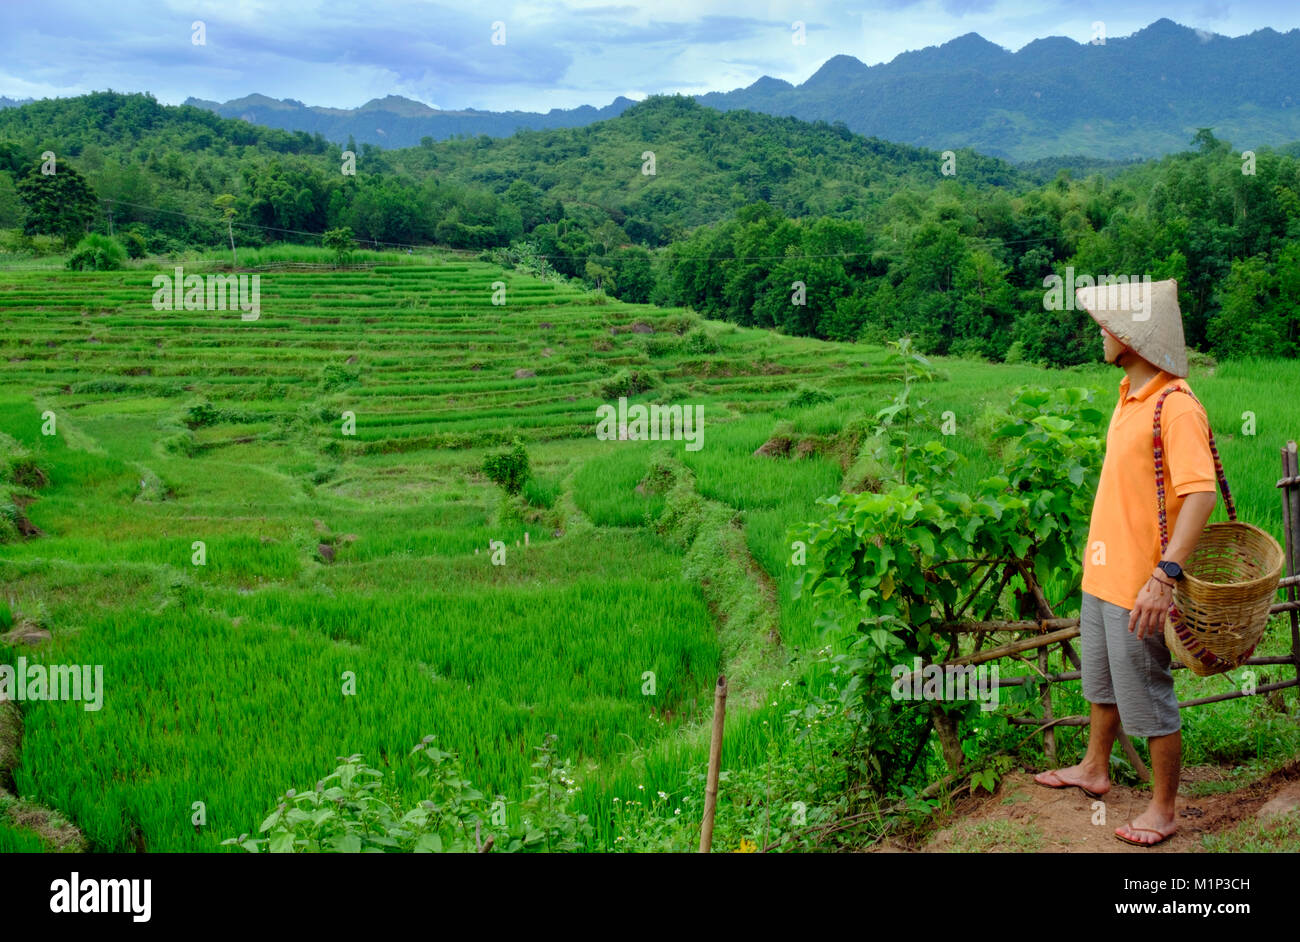 L'agricoltore che indossa un cappello conico guardando fuori sul riso paddy terrazze, Mai Chau, Hoa Binh, Vietnam, Indocina, Asia sud-orientale, Asia Foto Stock